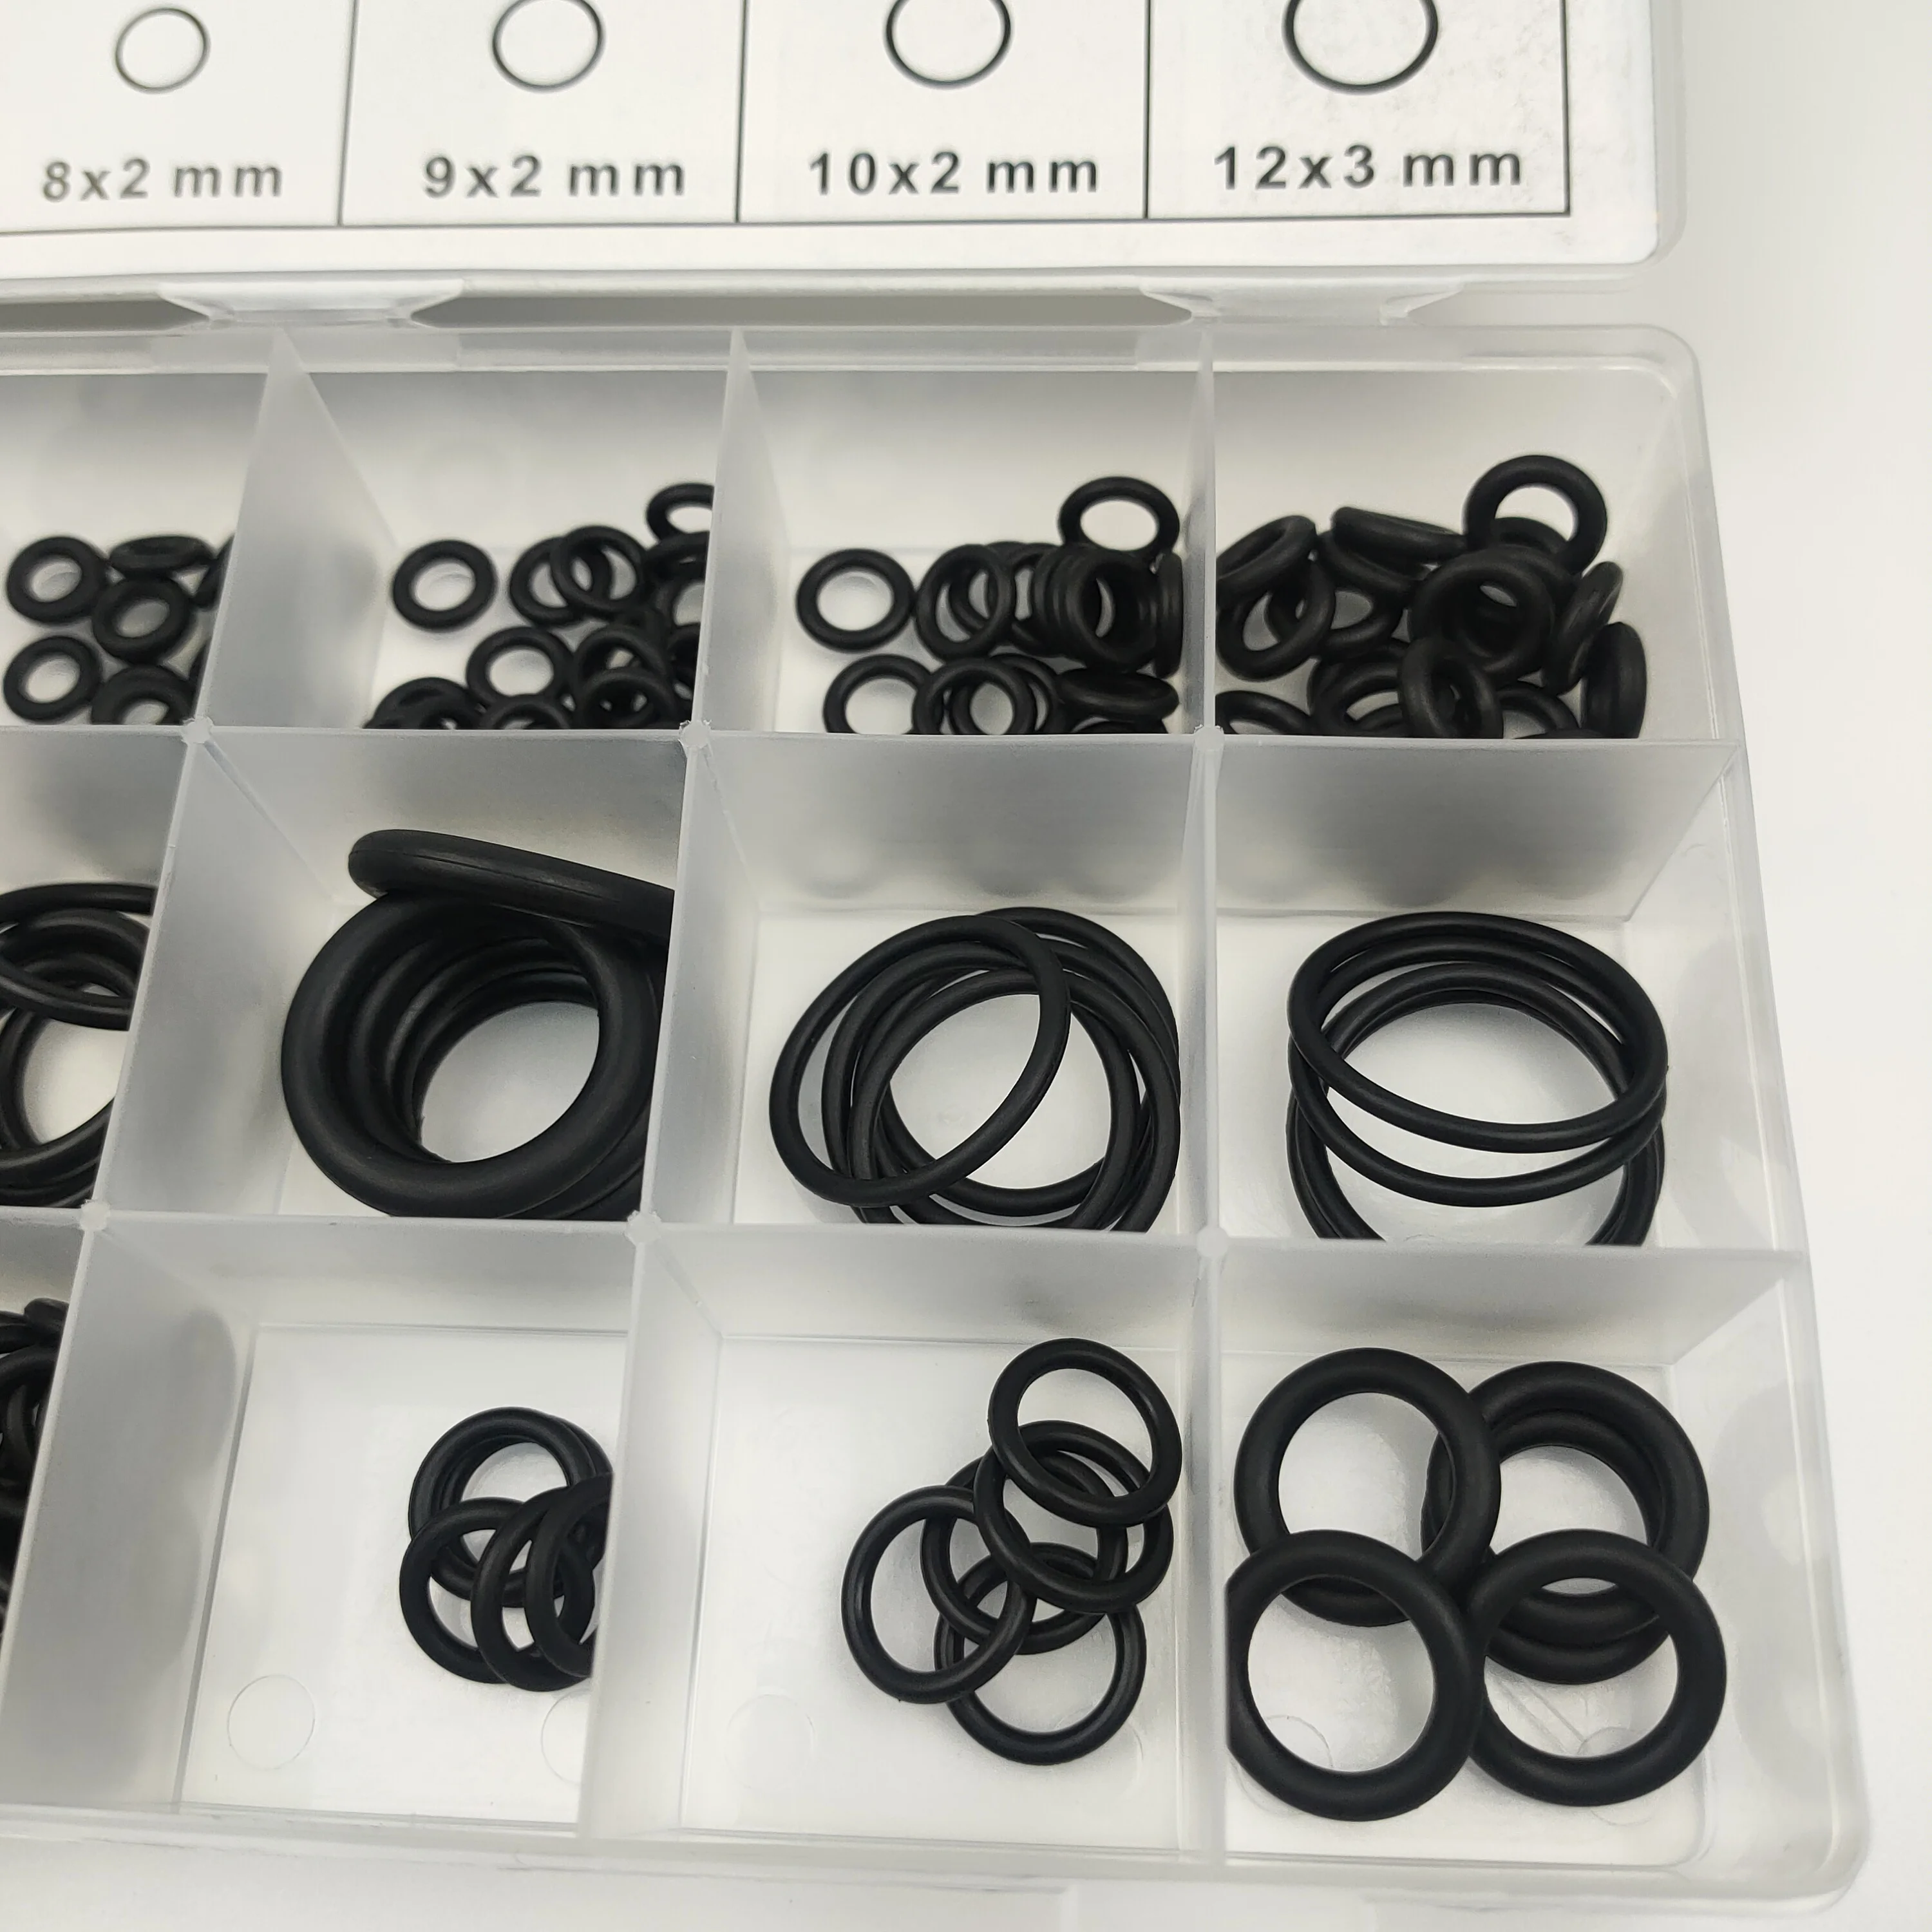 
CN;FUJ 225pcs Rubber O Ring Kit Box Best Seal O-ring Kit Box Metric Size 